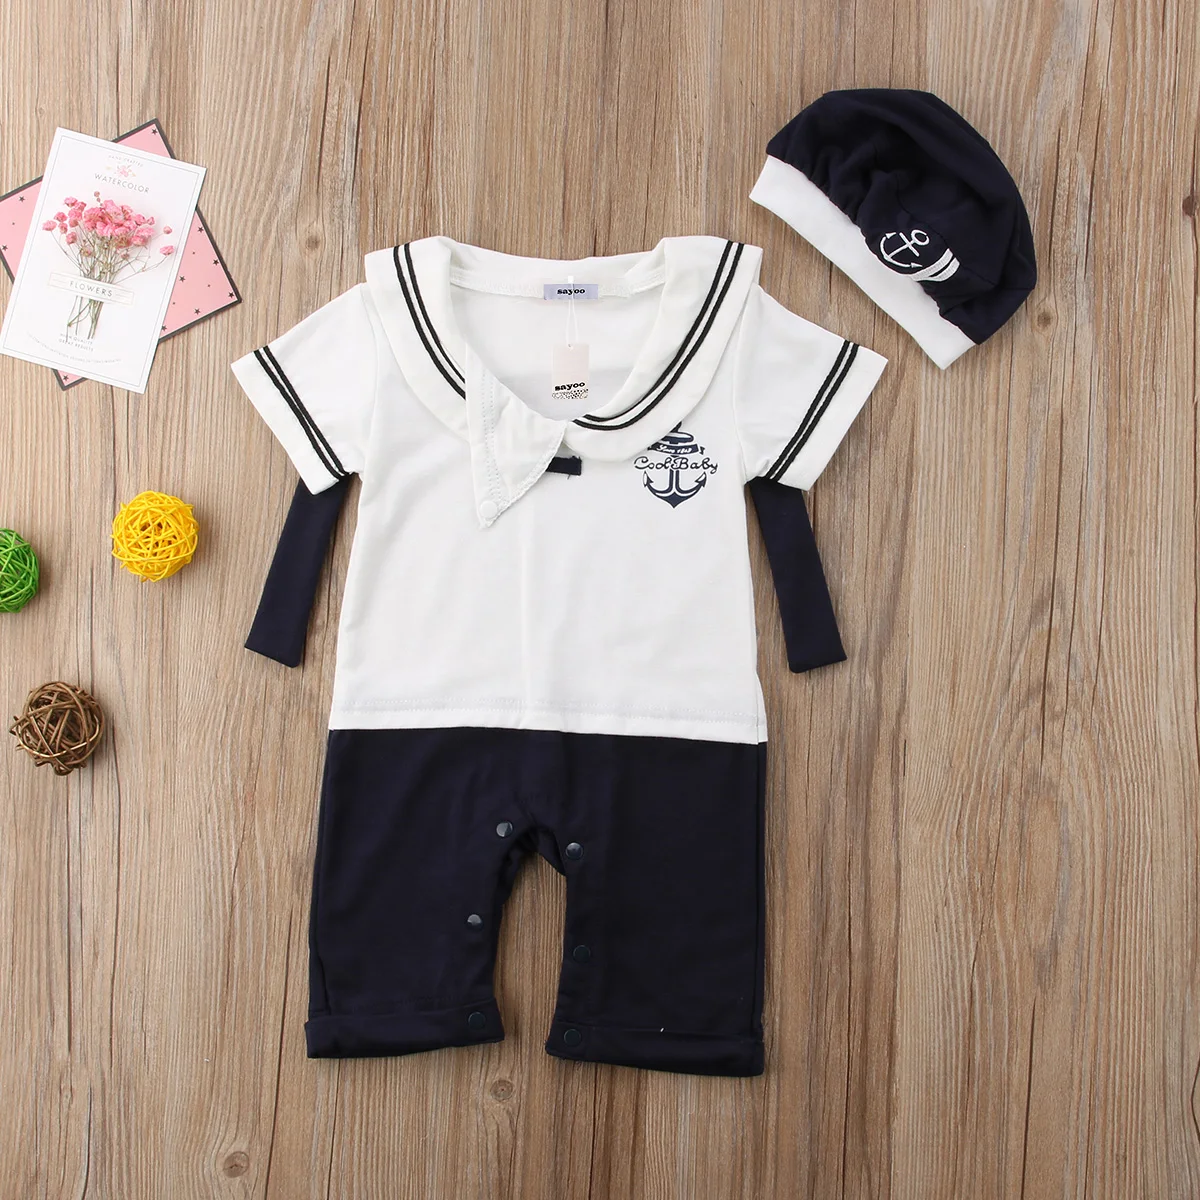 Pudcoco/комбинезоны для мальчиков от 0 до 24 месяцев, комбинезон для новорожденных мальчиков с моряком, комплект одежды для малышей, комбинезон+ шляпа